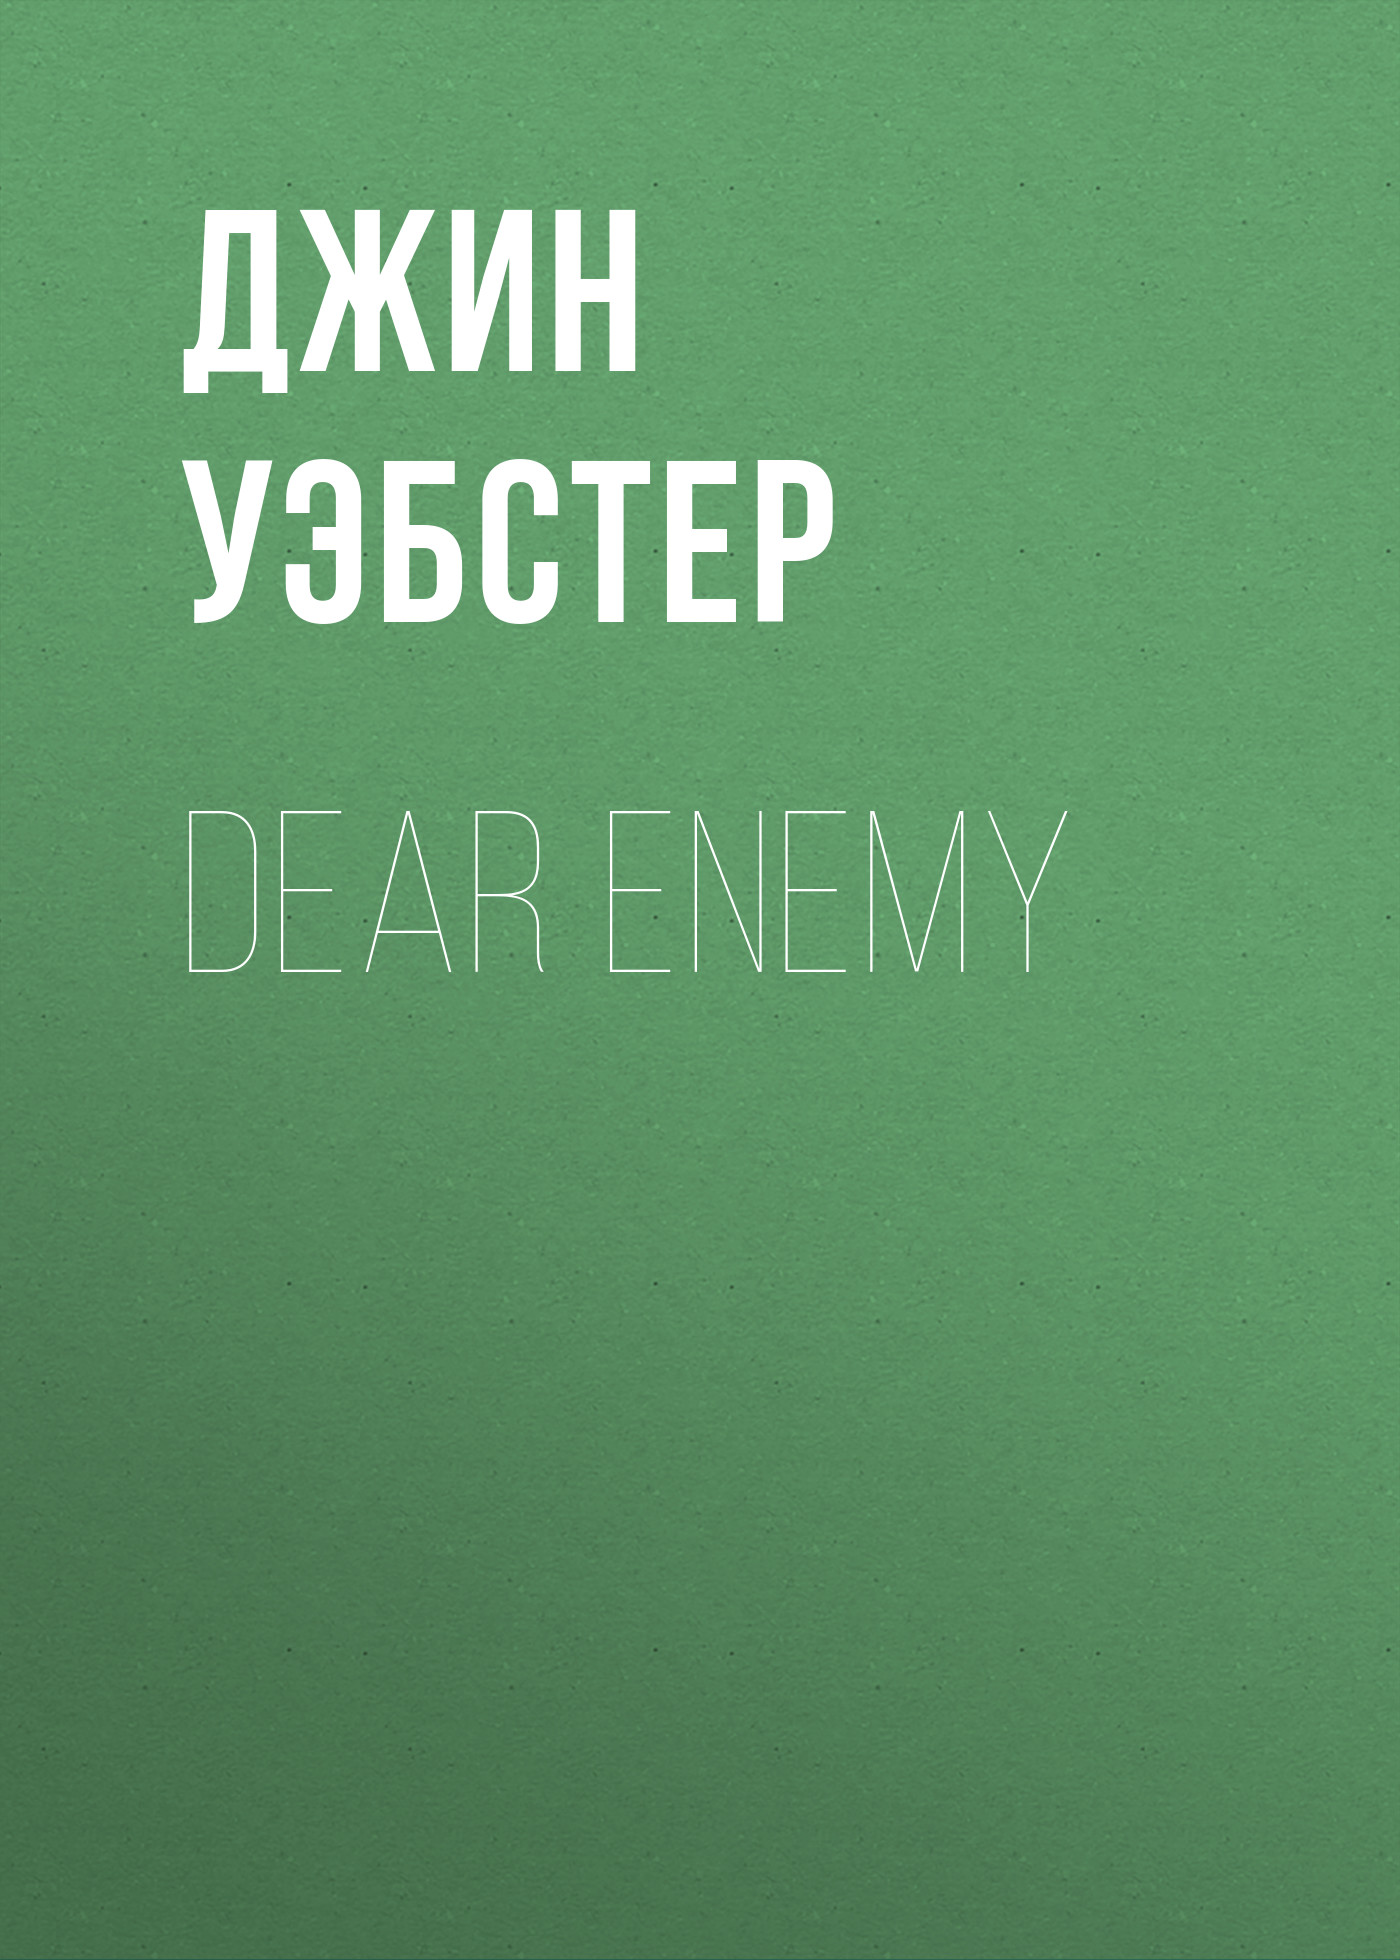 Книга Dear Enemy из серии , созданная Джин Уэбстер, может относится к жанру Зарубежные детские книги, Зарубежная старинная литература, Зарубежная классика. Стоимость электронной книги Dear Enemy с идентификатором 34841918 составляет 0 руб.